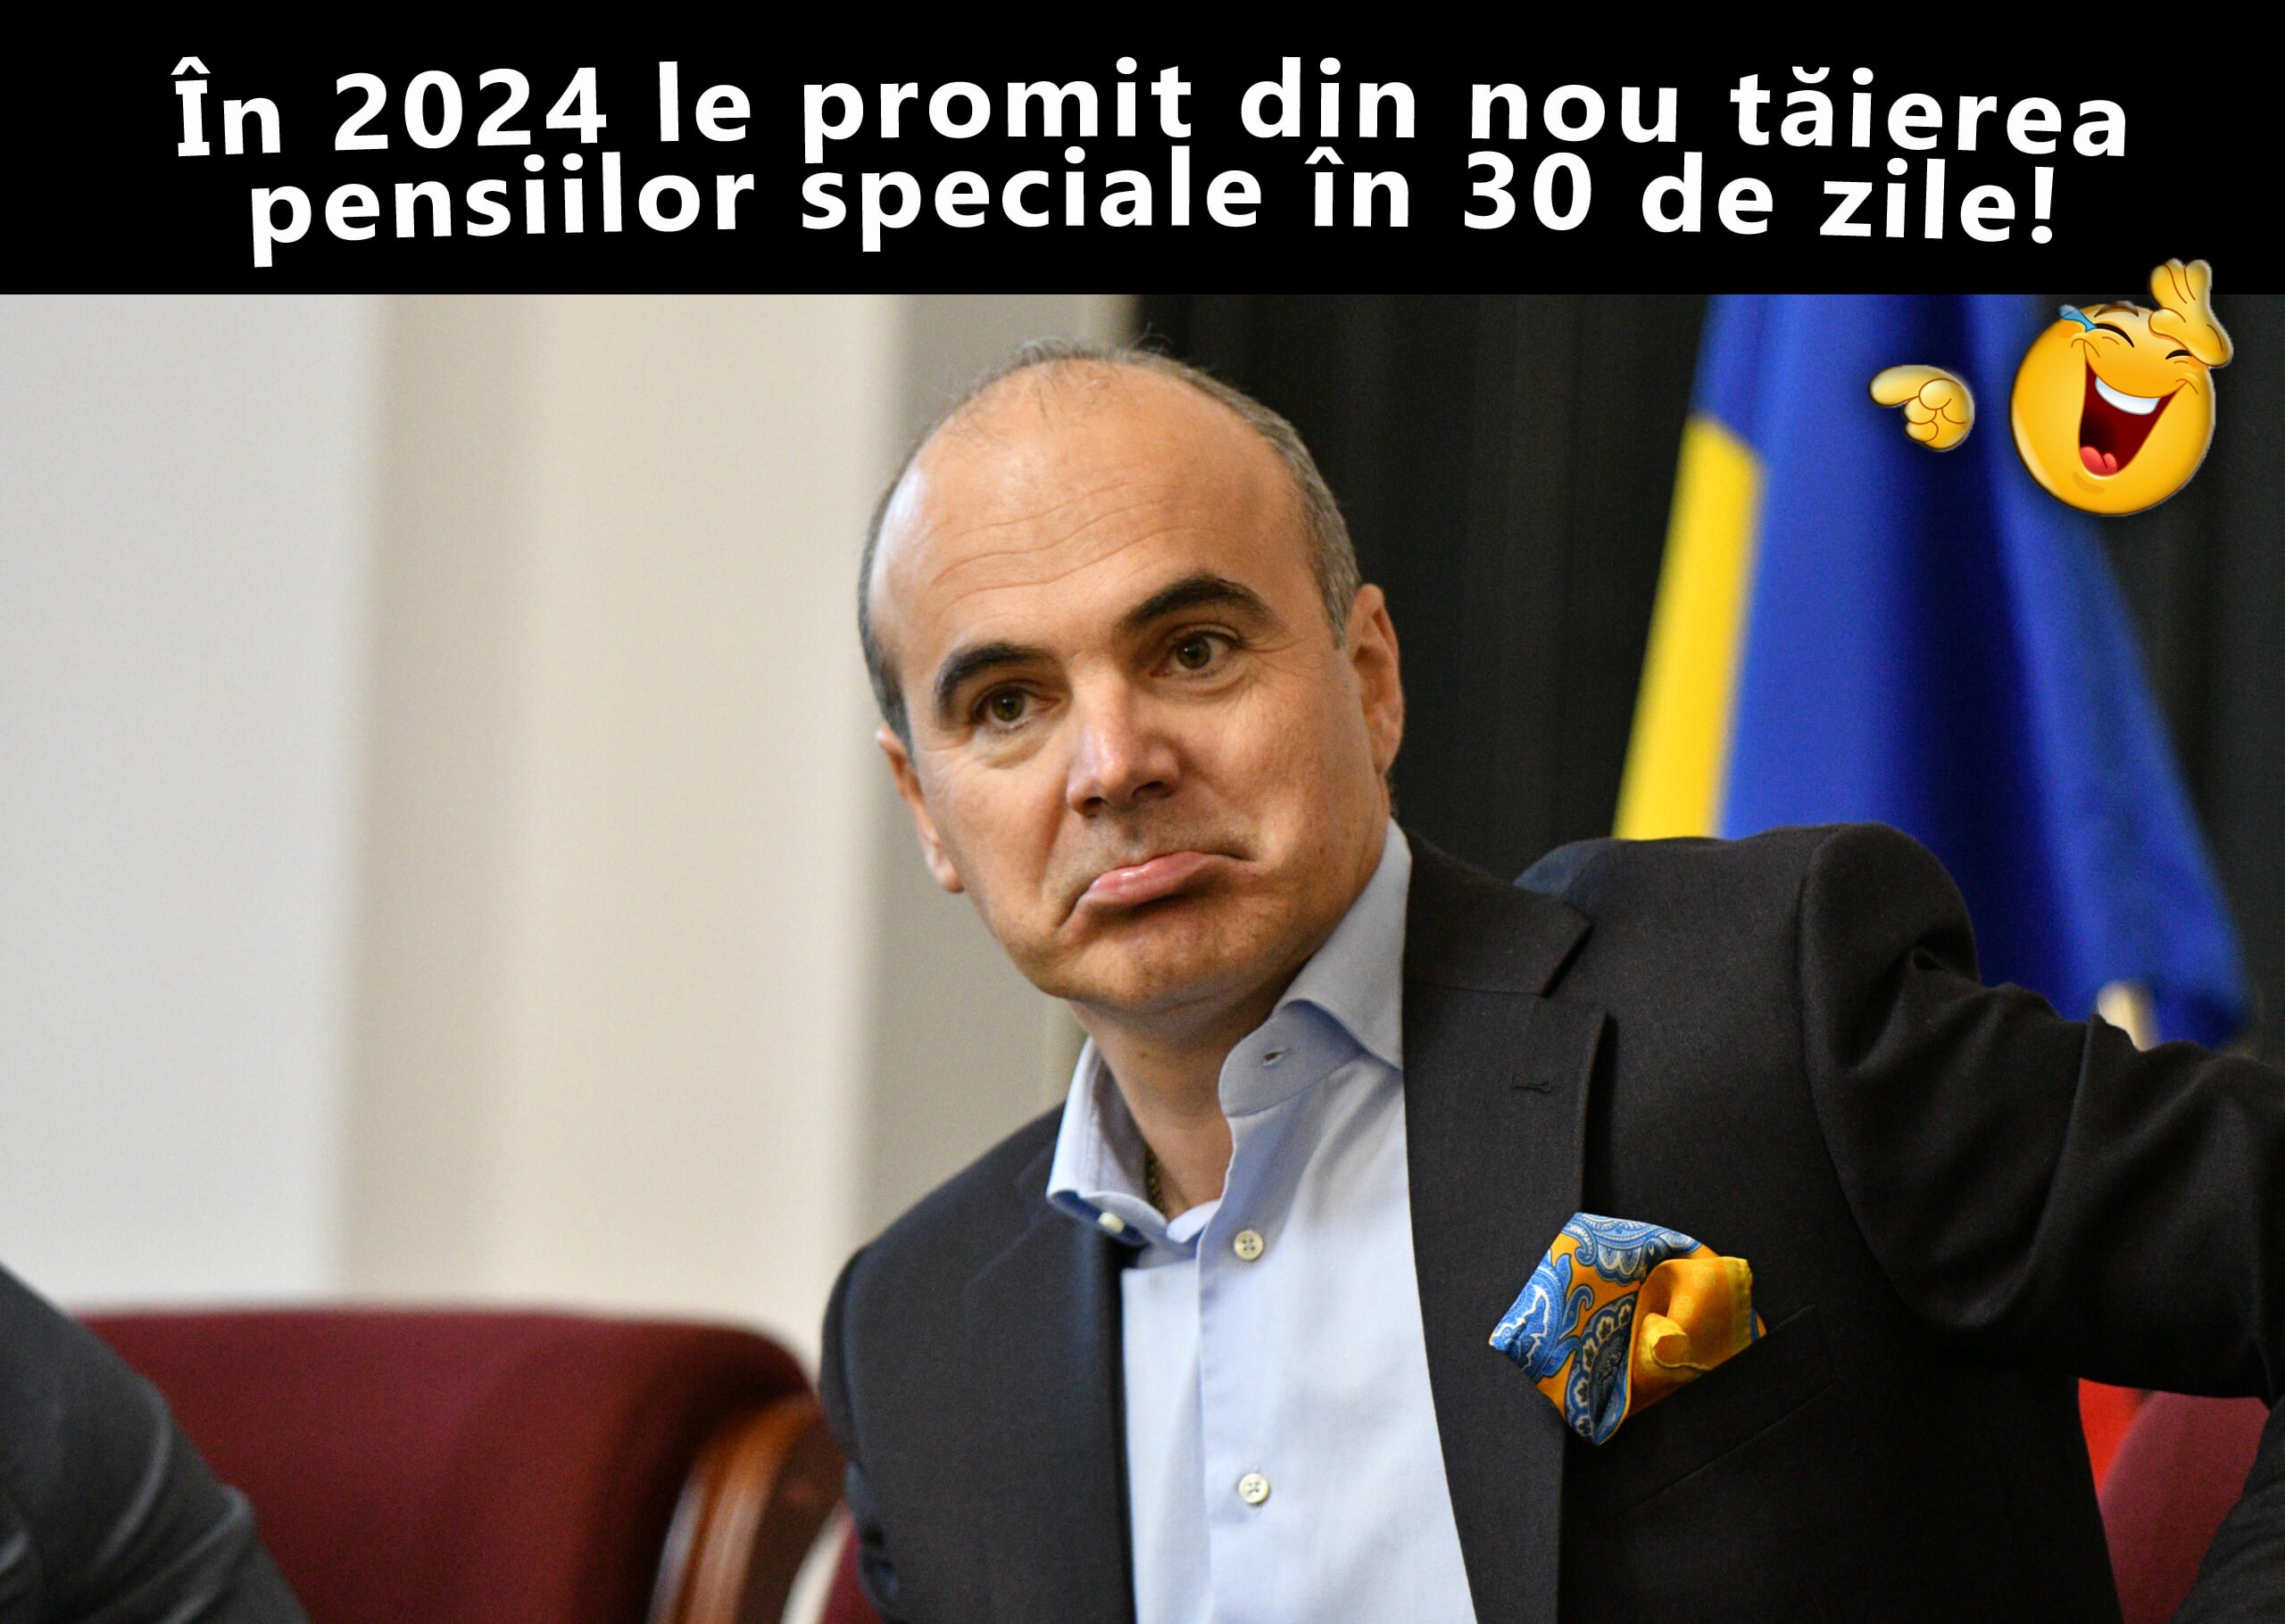 Ce va face Rareș Bogdan la alegerile din 2024? Va tăia din nou pensiile speciale în 30 de zile? – CRITICII.RO